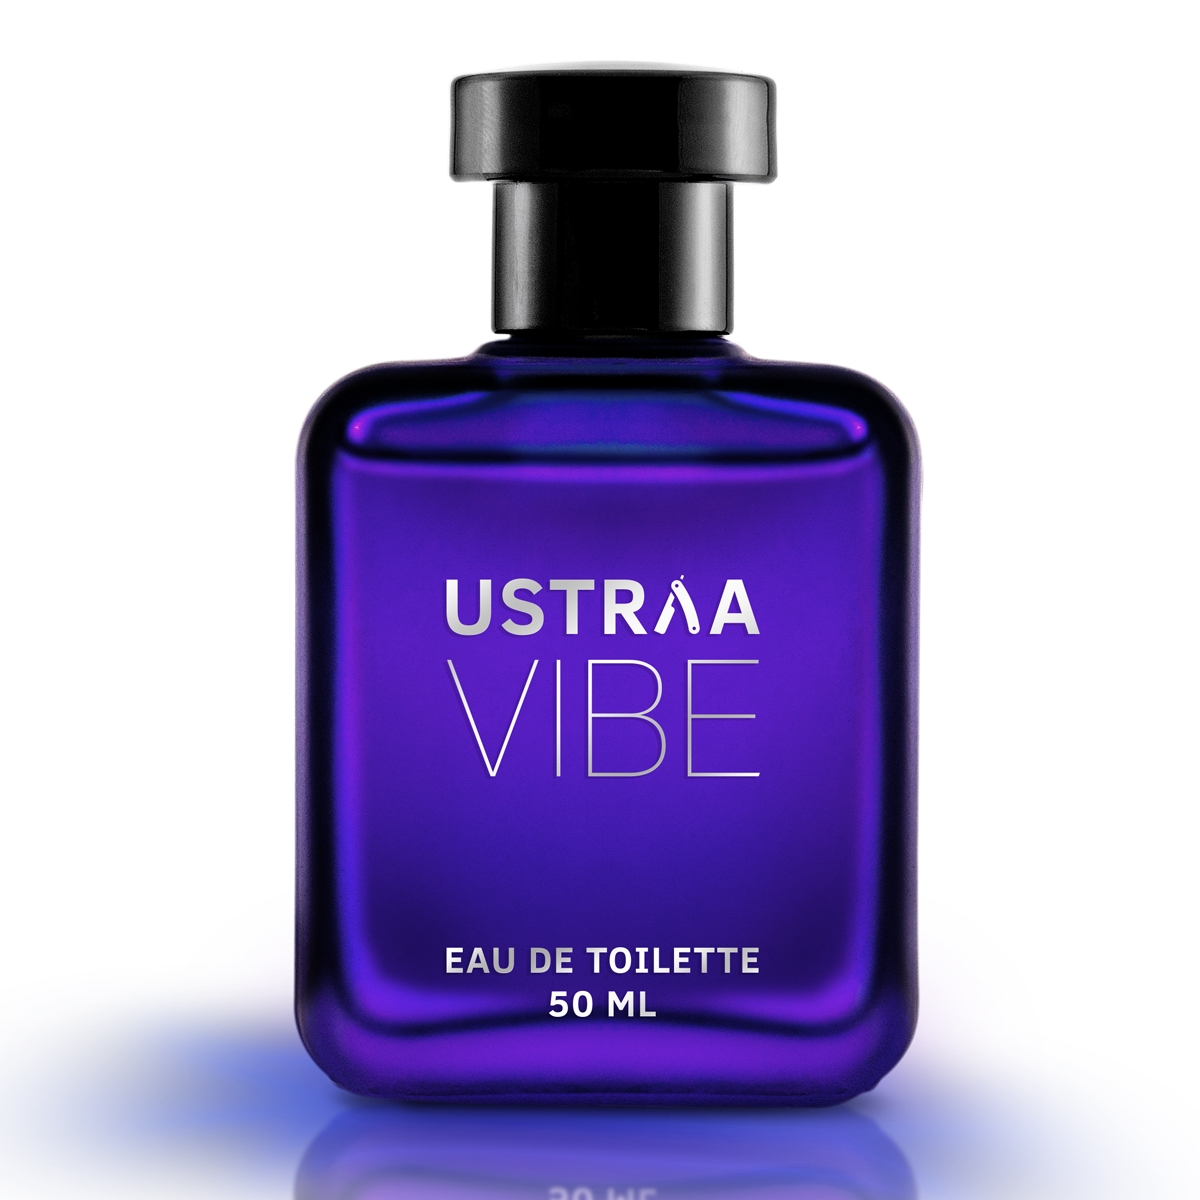 Ustraa | Ustraa Vibe EDT 50ml - Perfume for Men 0